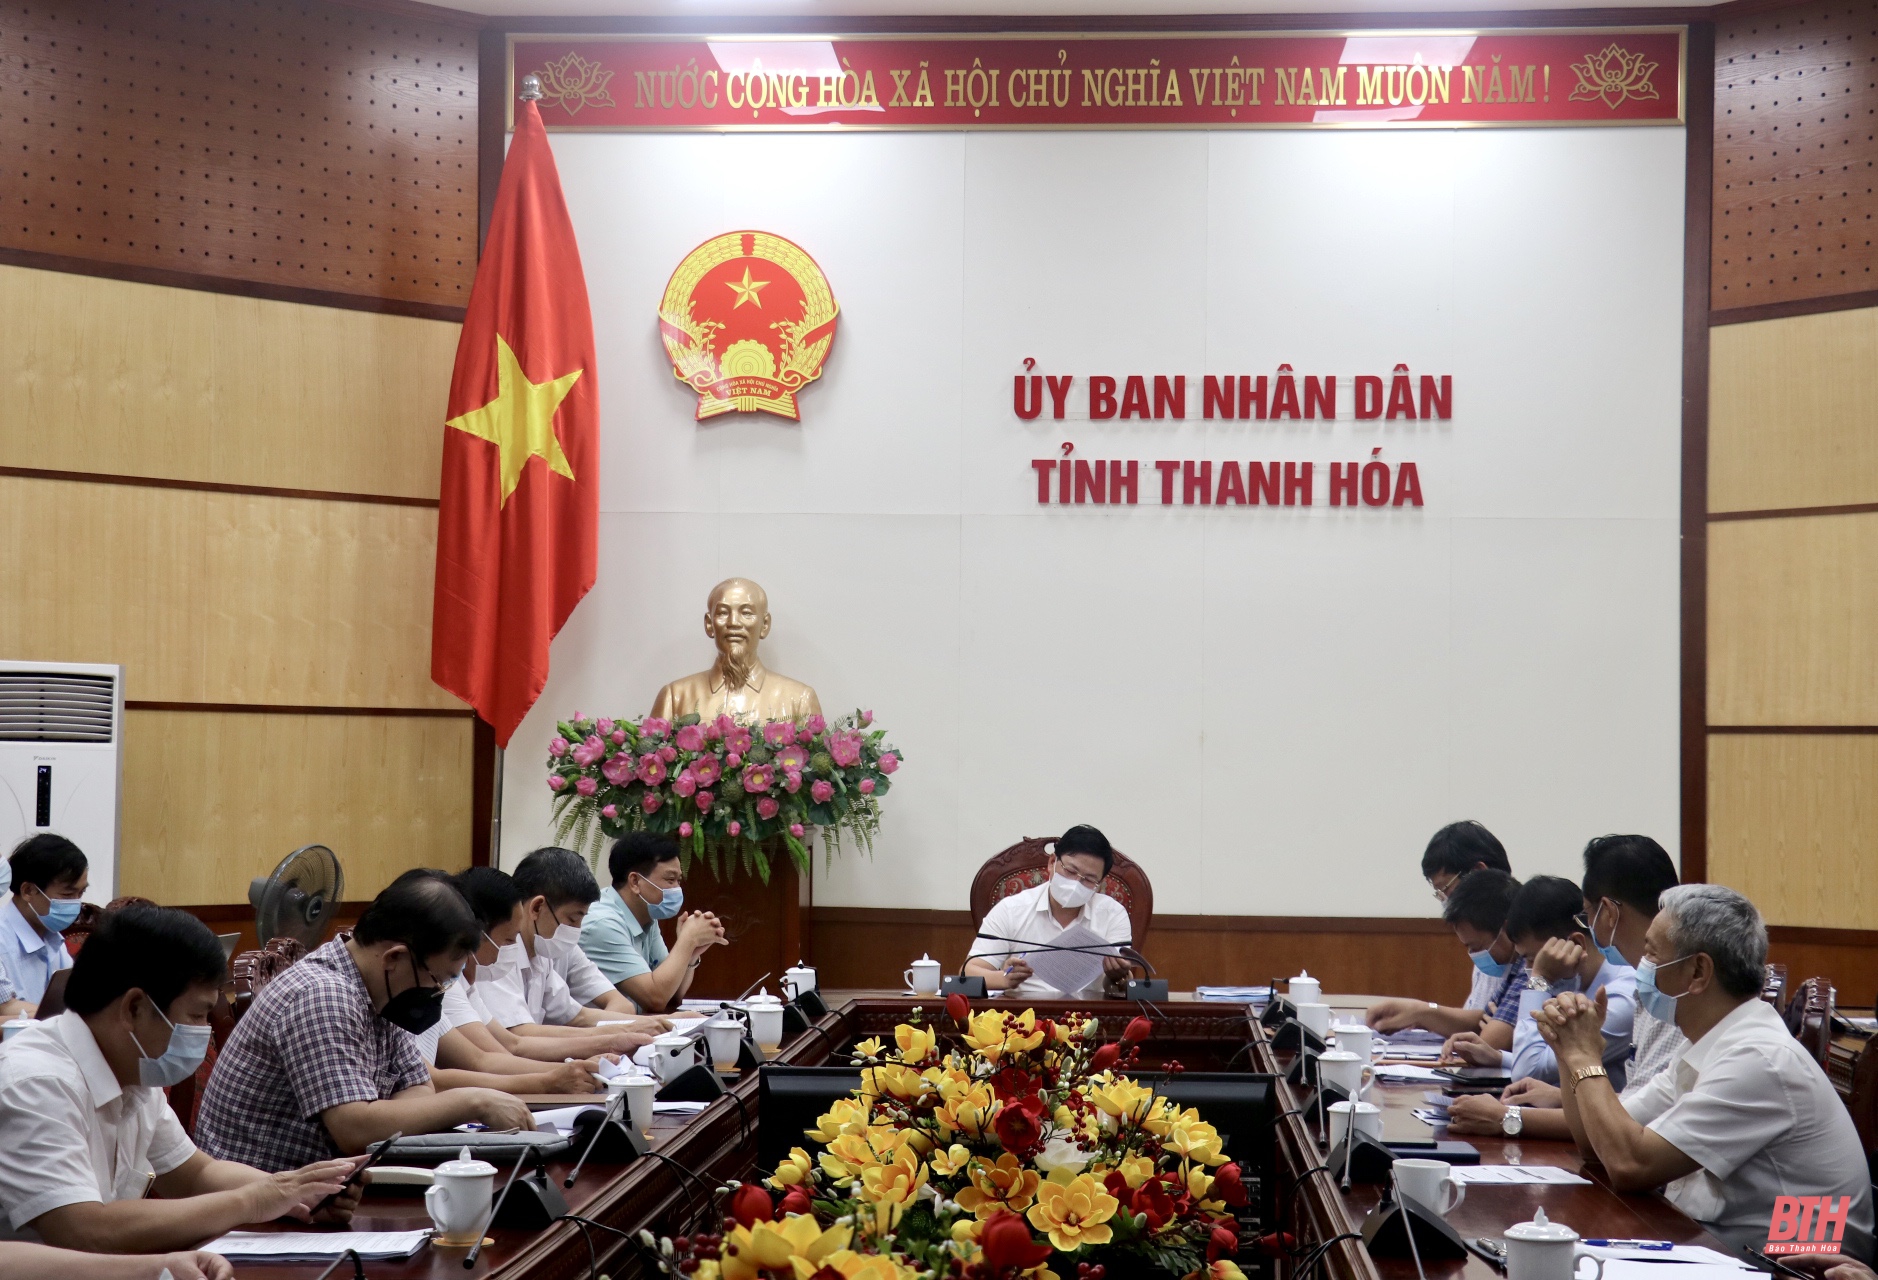 Phó Chủ tịch UBND tỉnh Mai Xuân Liêm nghe báo cáo cơ chế, chính sách thu hút đầu tư và hỗ trợ trong Khu CNTT Thanh Hoá